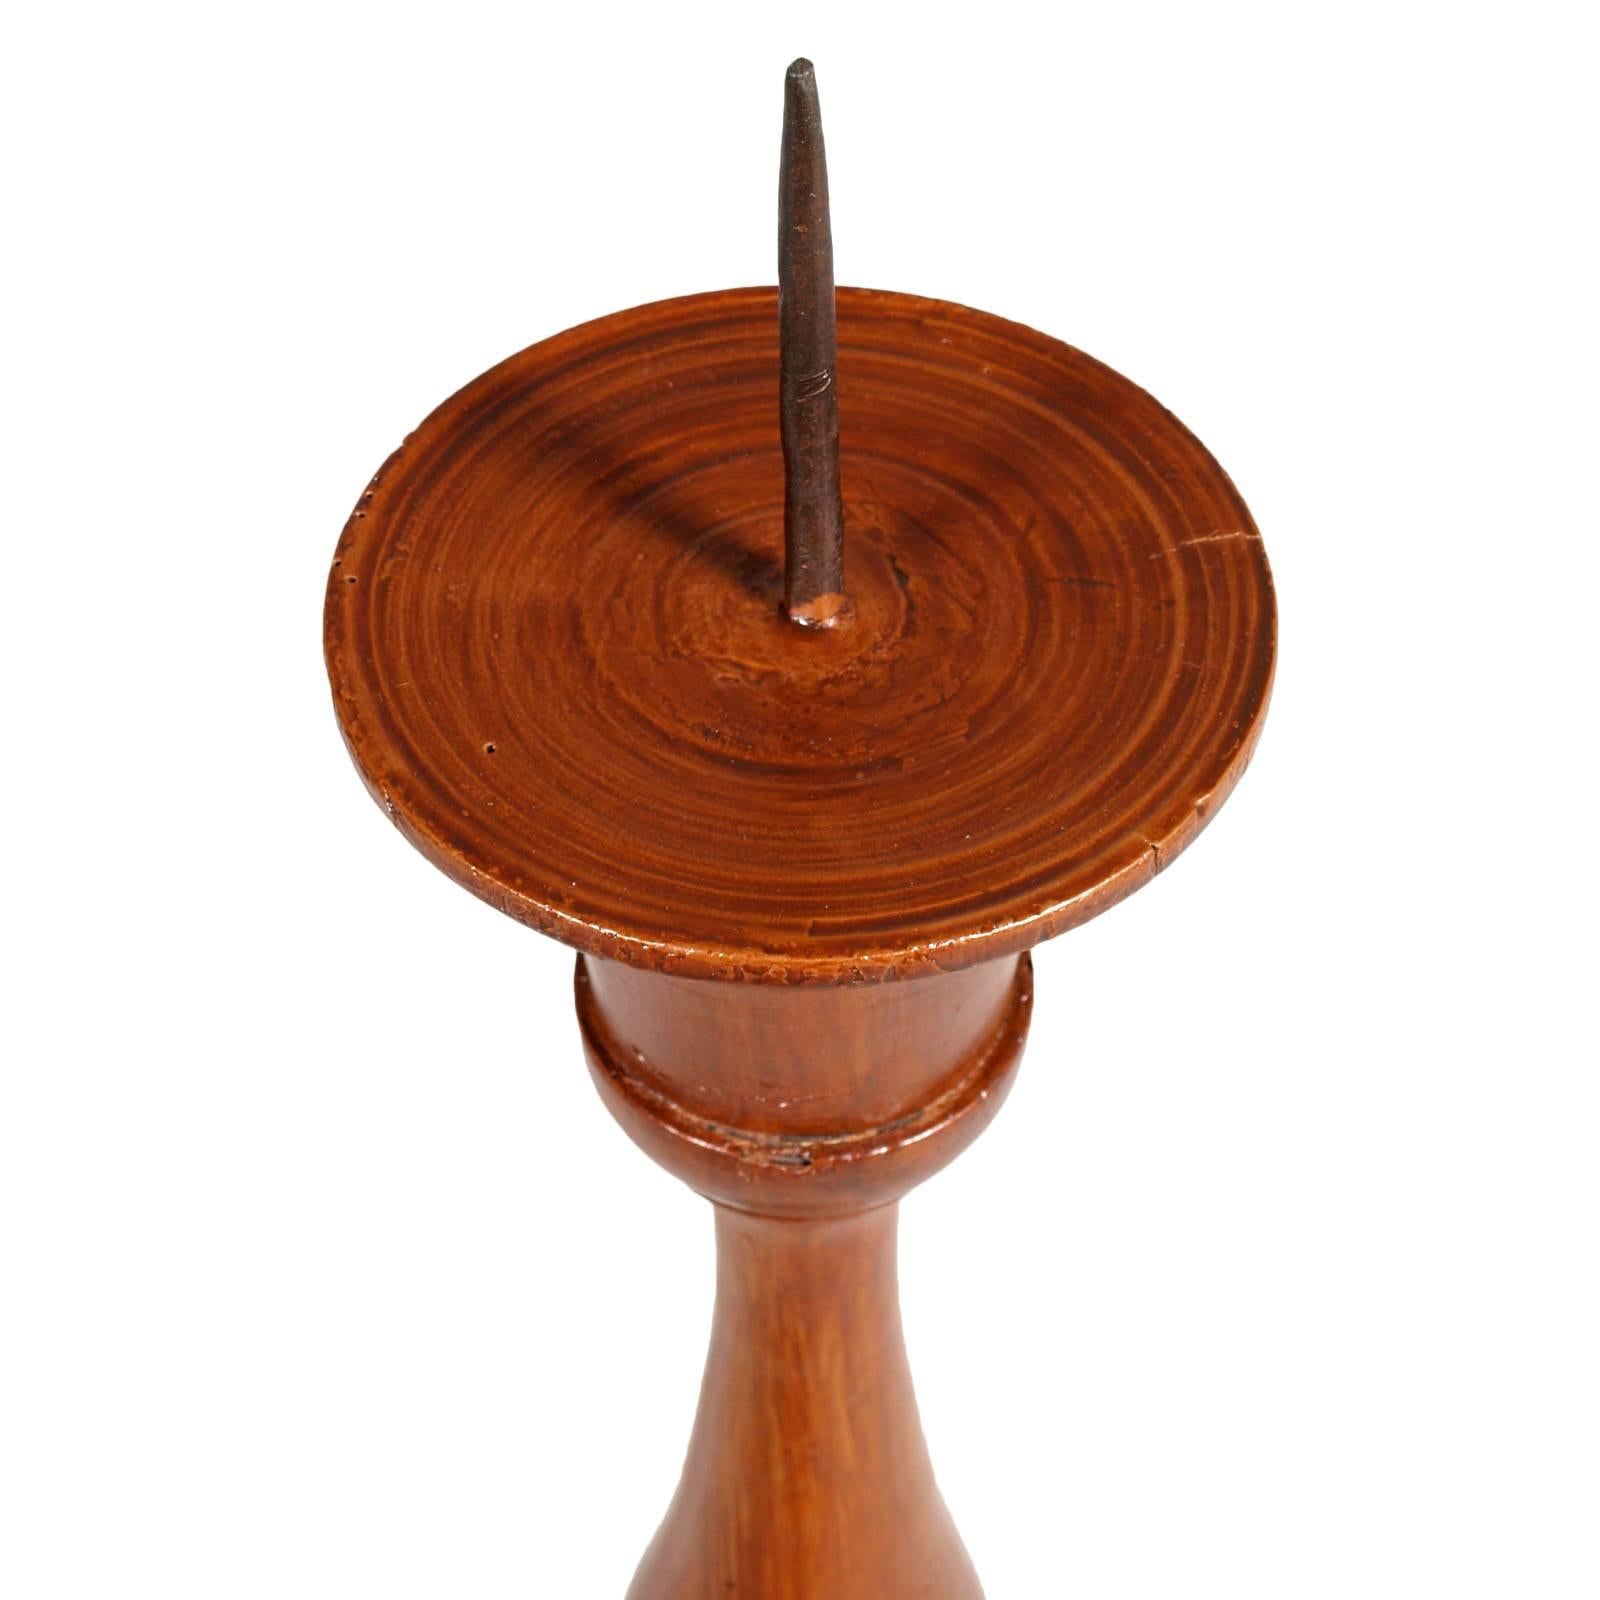 Antique candélabre en noyer peint en brun, période 1800s, restauré et poli à la cire

Mesures cm : Hauteur 90, diamètre 25.